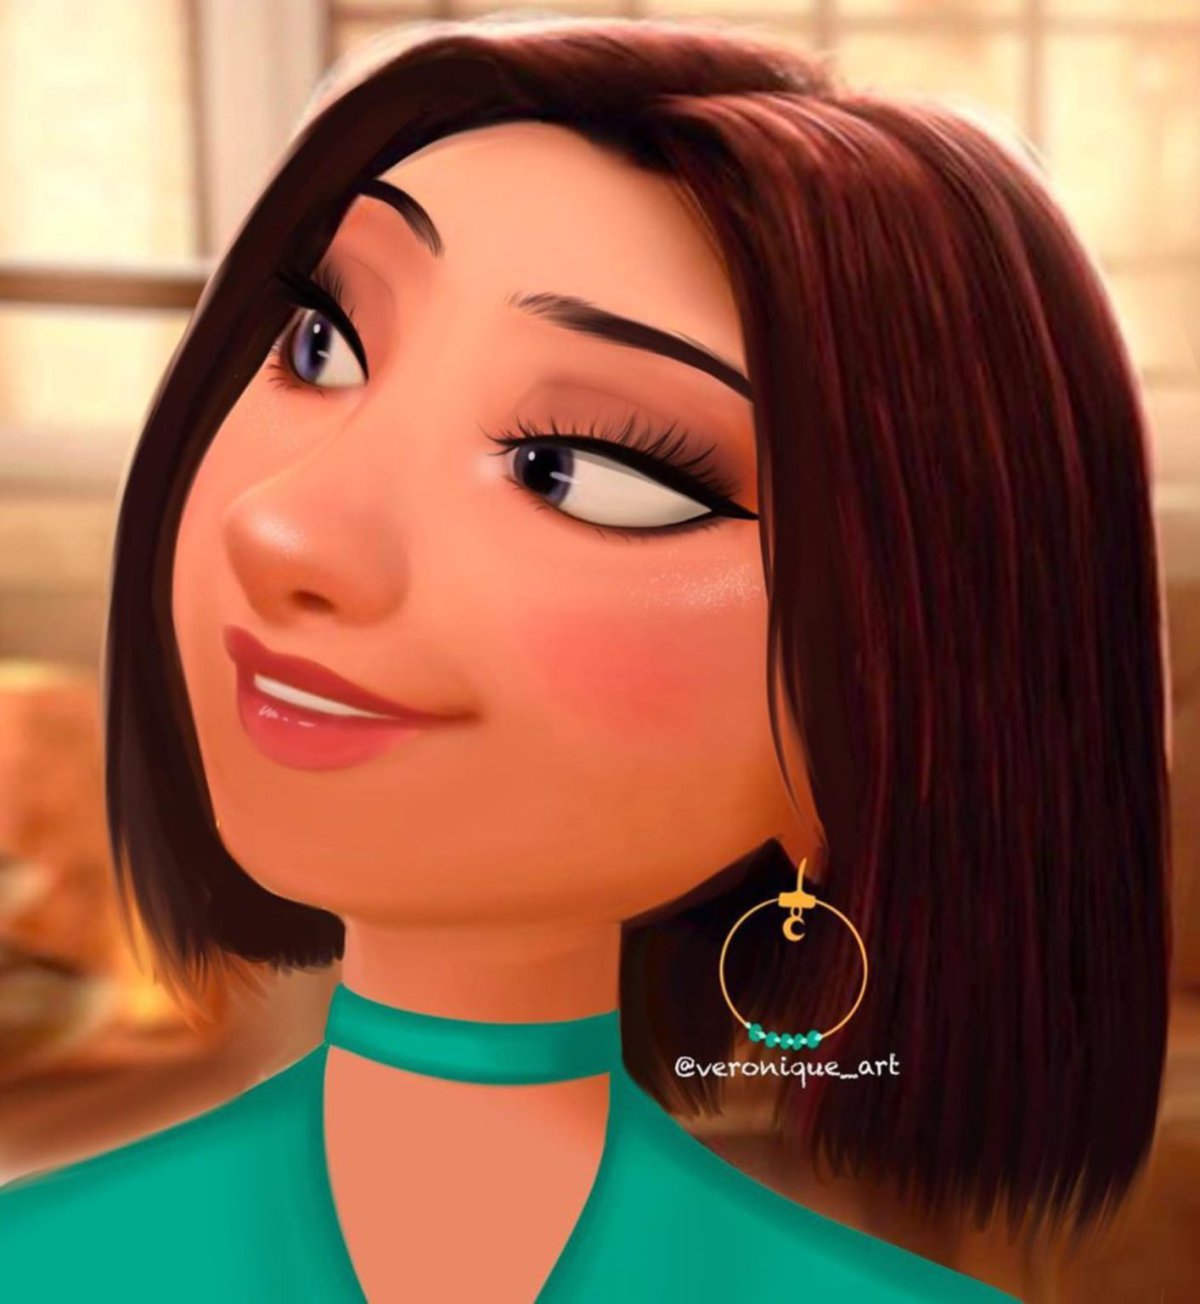 Sintético 103+ Foto Imagenes De Personajes De Disney Mujeres Cena Hermosa